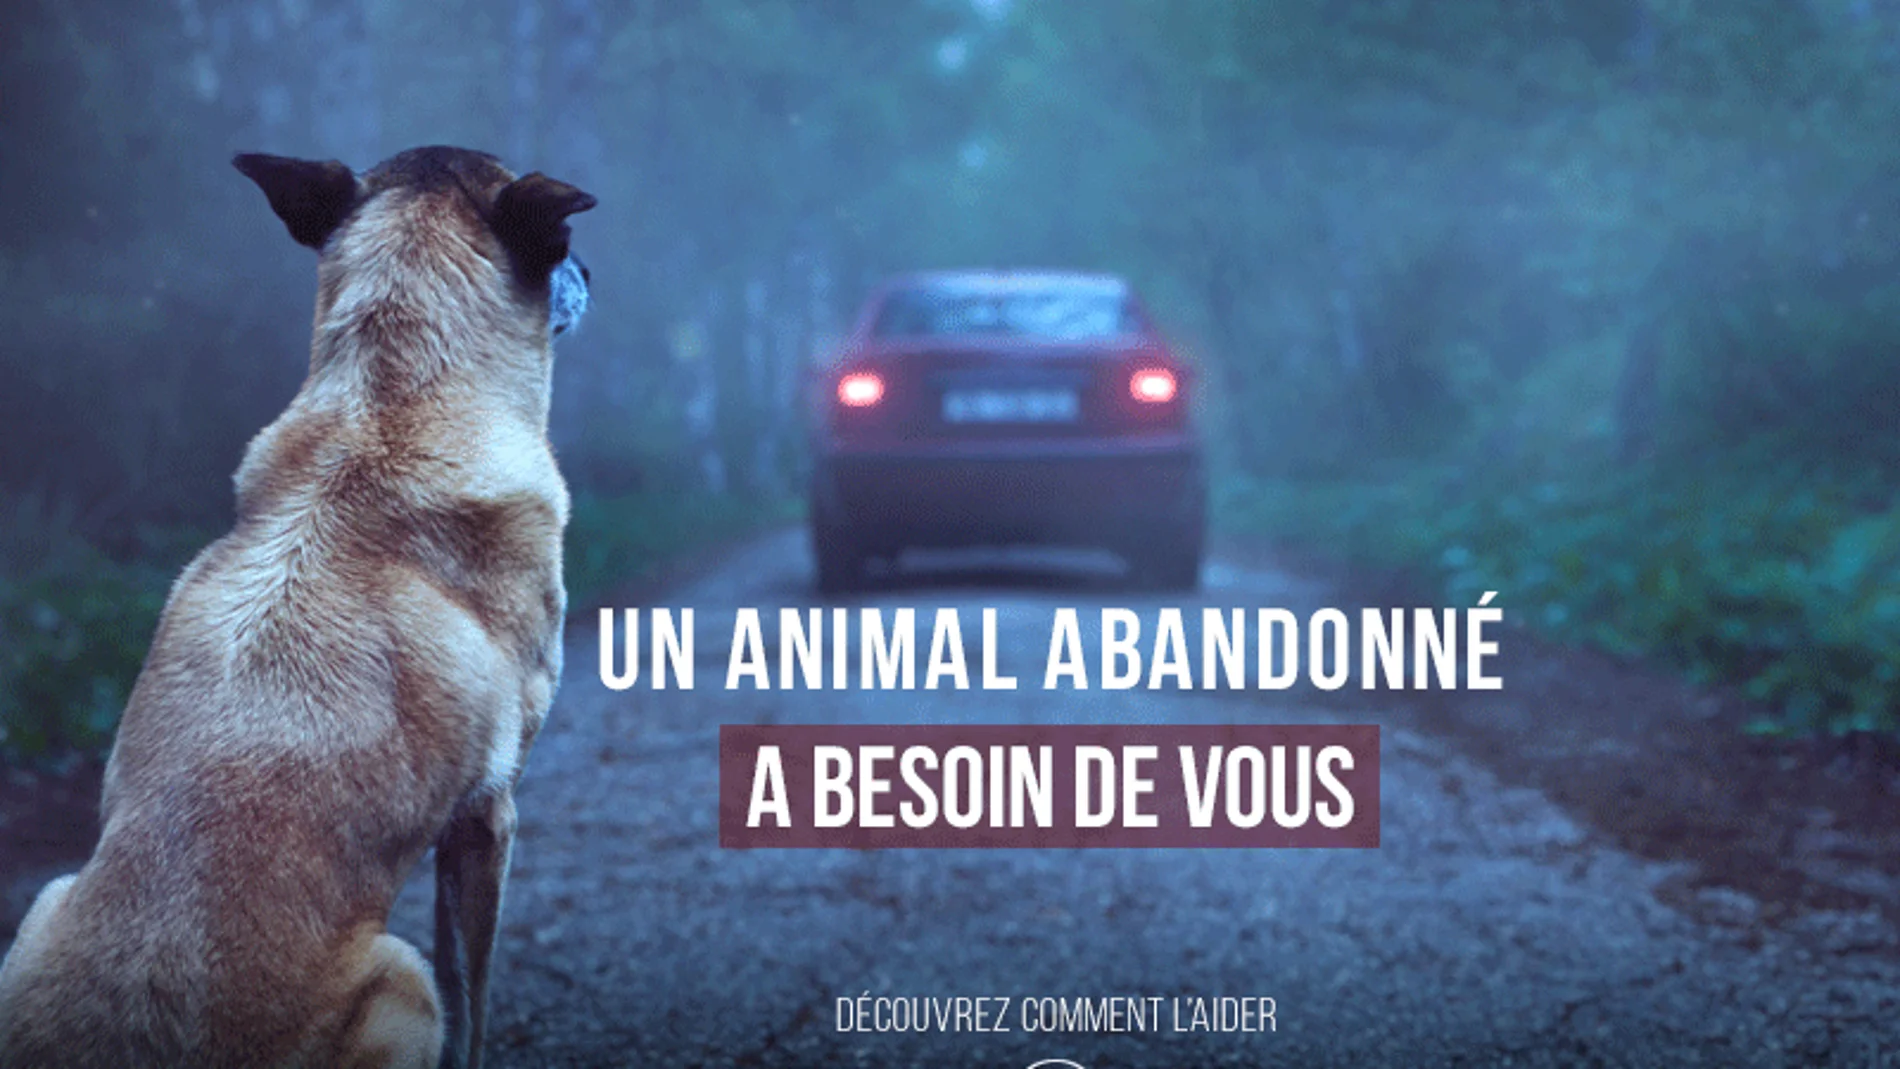 Campaña viral con el objetivo de prevenir el abandono animal